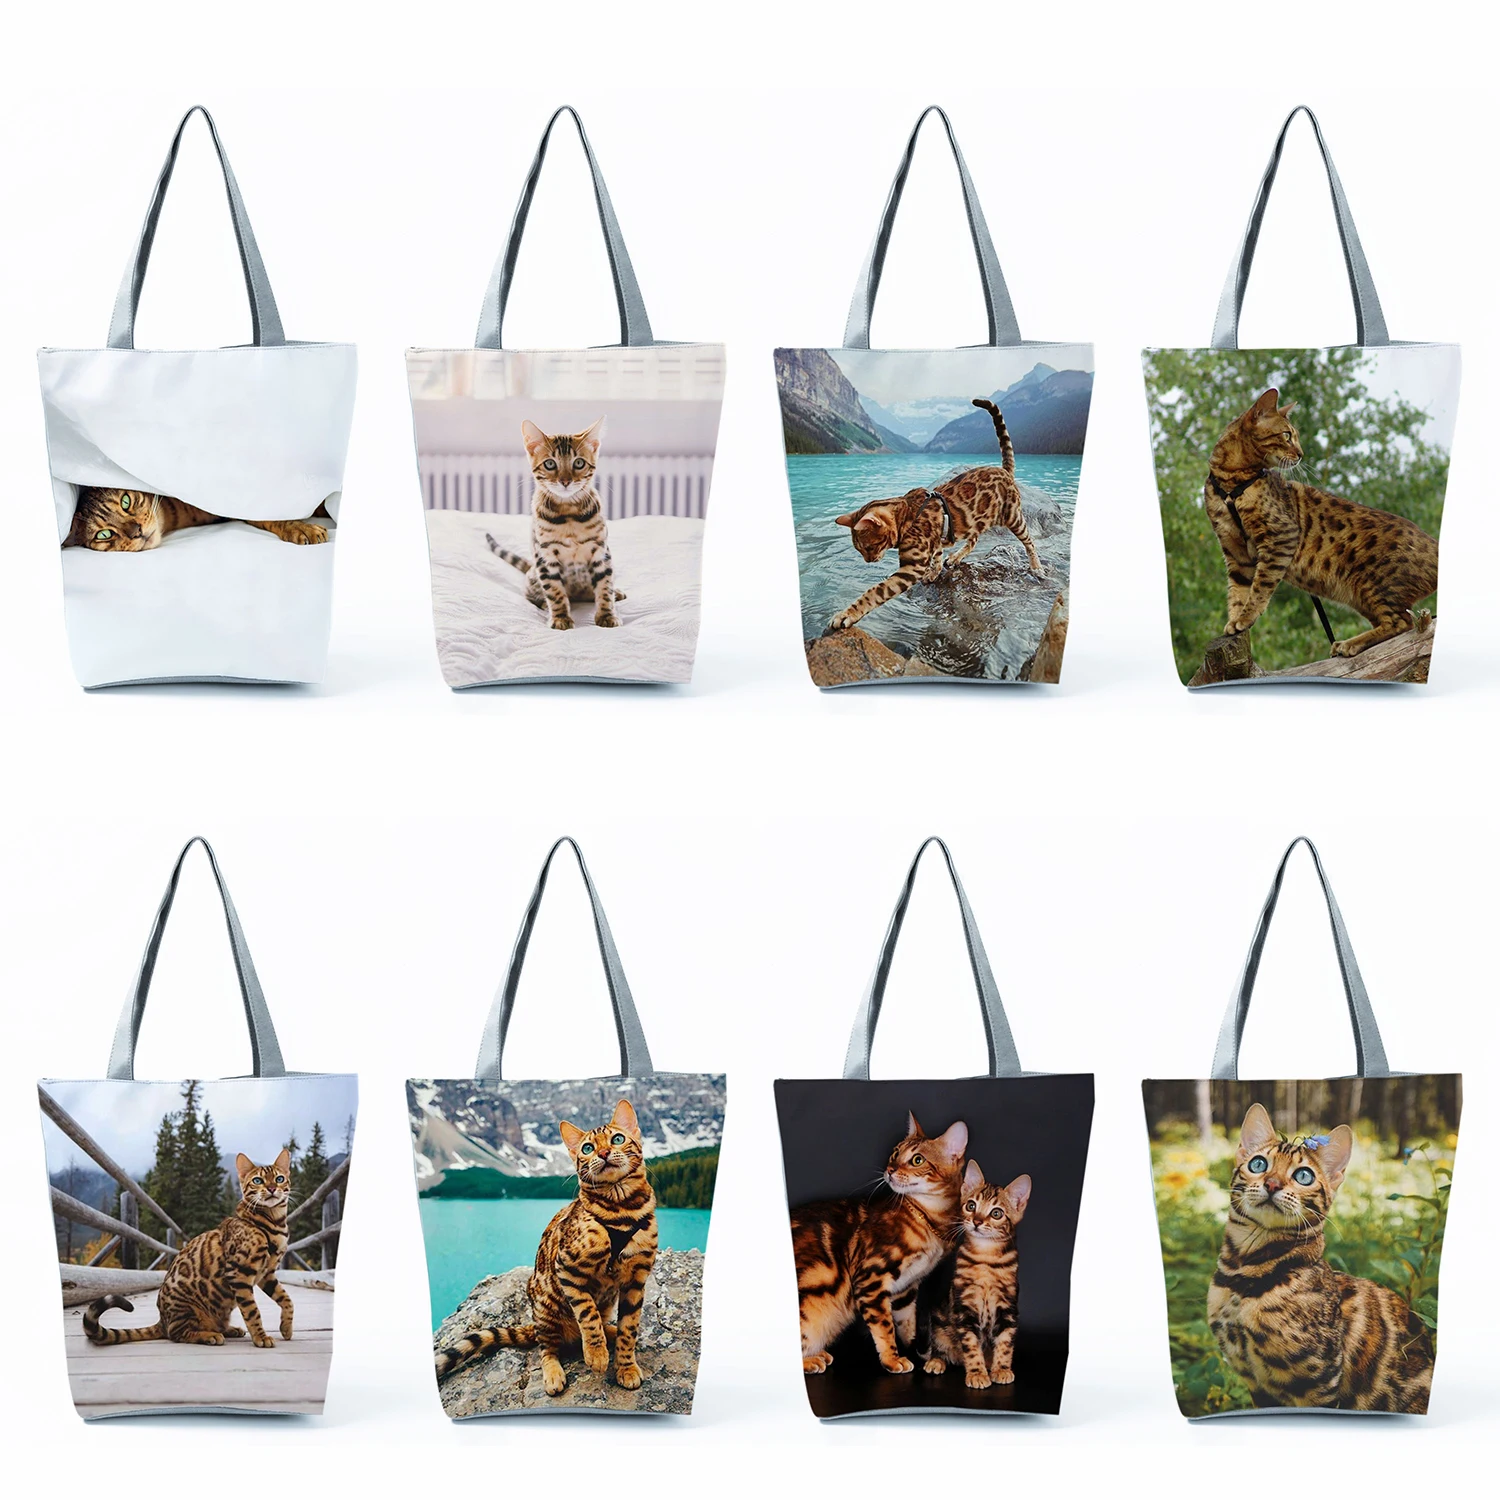 

Складные дорожные пляжные сумки для женщин, офисные тоуты с принтом бенгальского кота, милые повседневные вместительные мешки для покупок с графическим принтом животных